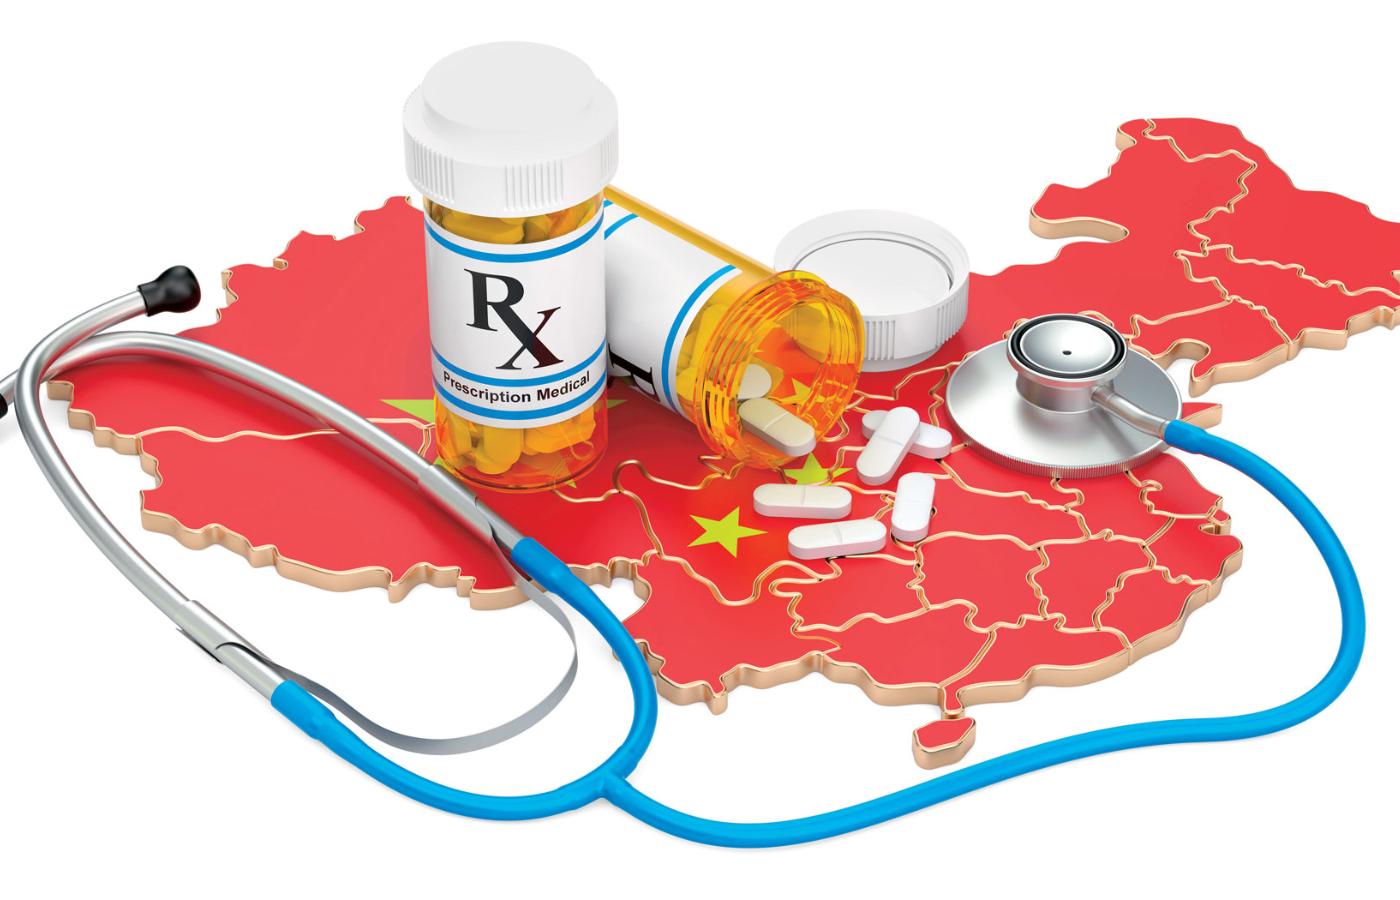 Chiny mają ambicje, by samemu produkować gotowe leki, a nie tylko półprodukty.